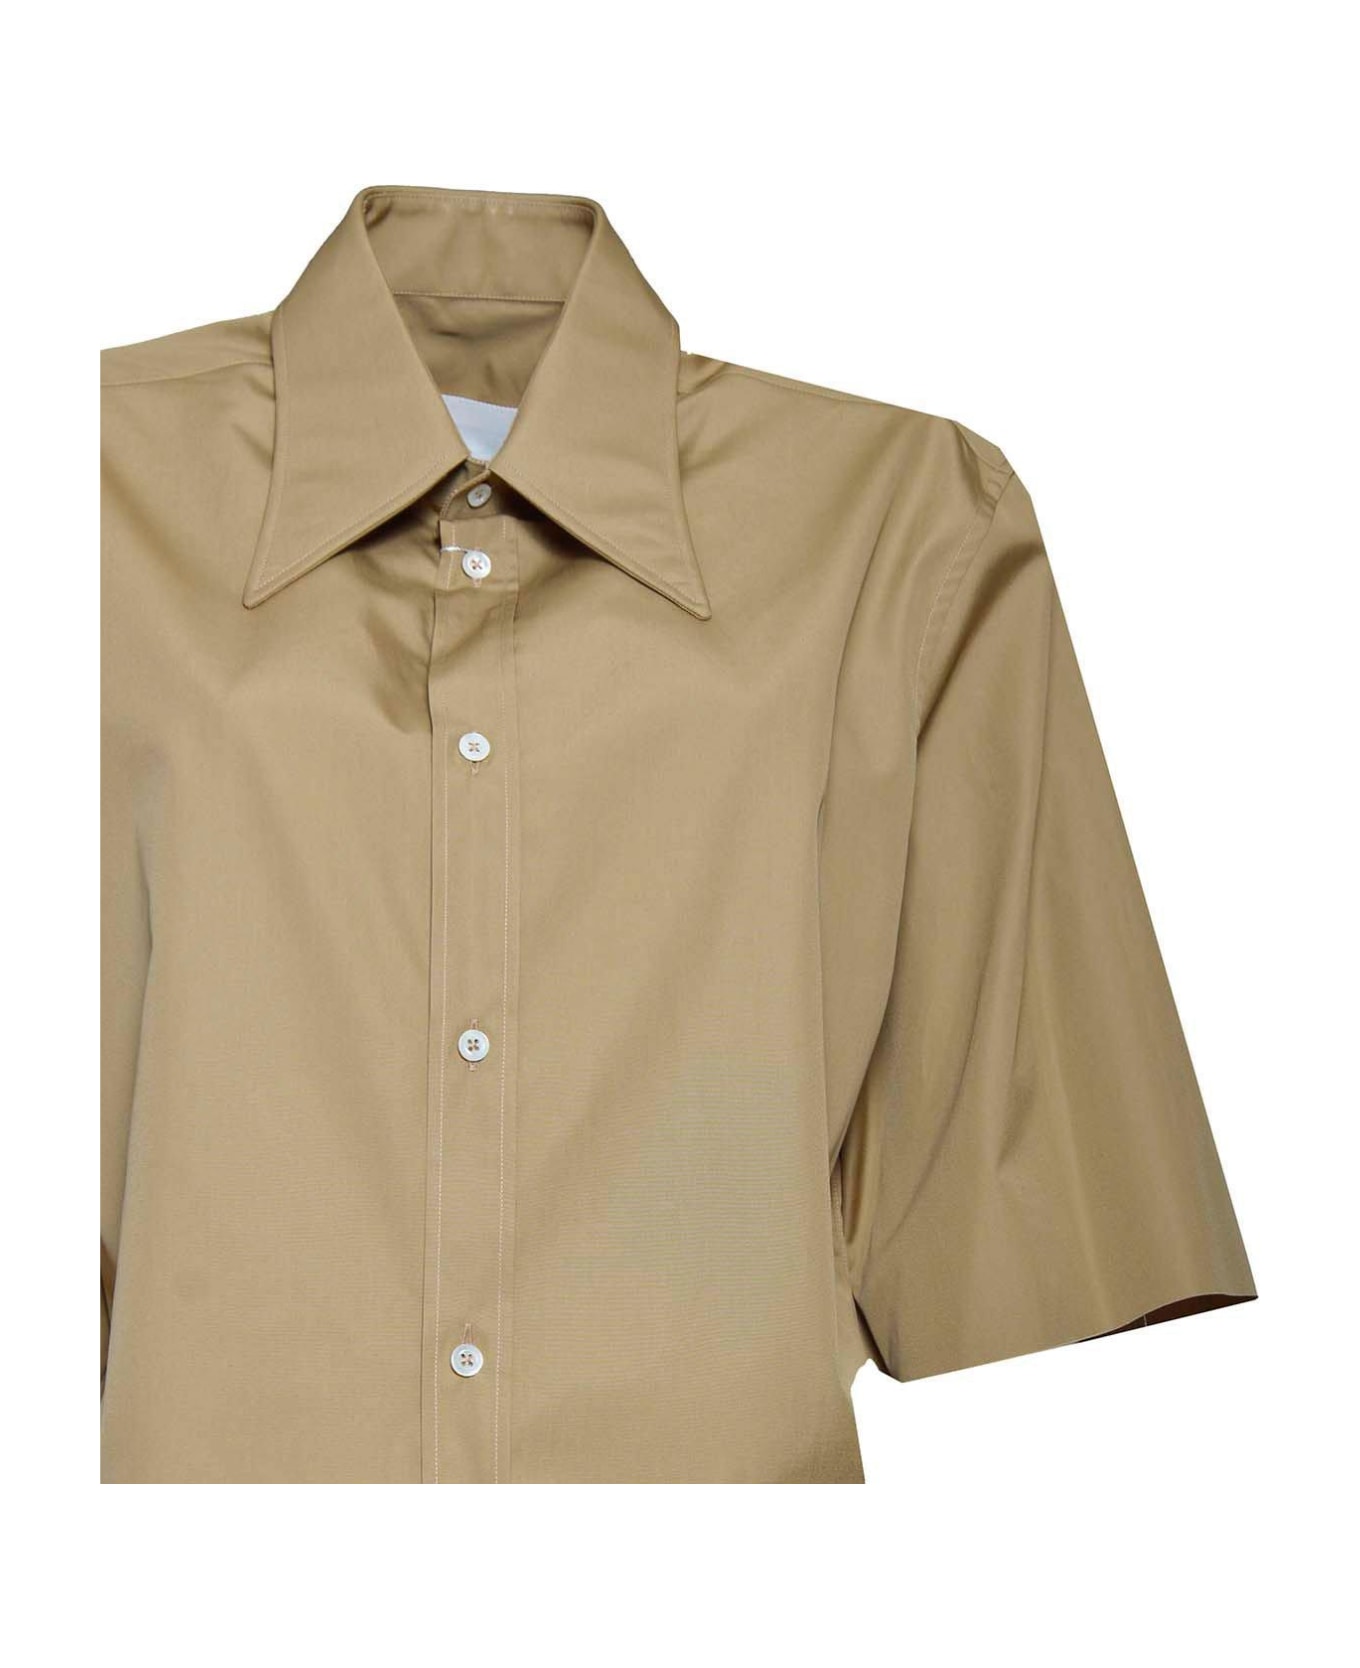 Maison Margiela Short-sleeved Shirt - CAMEL